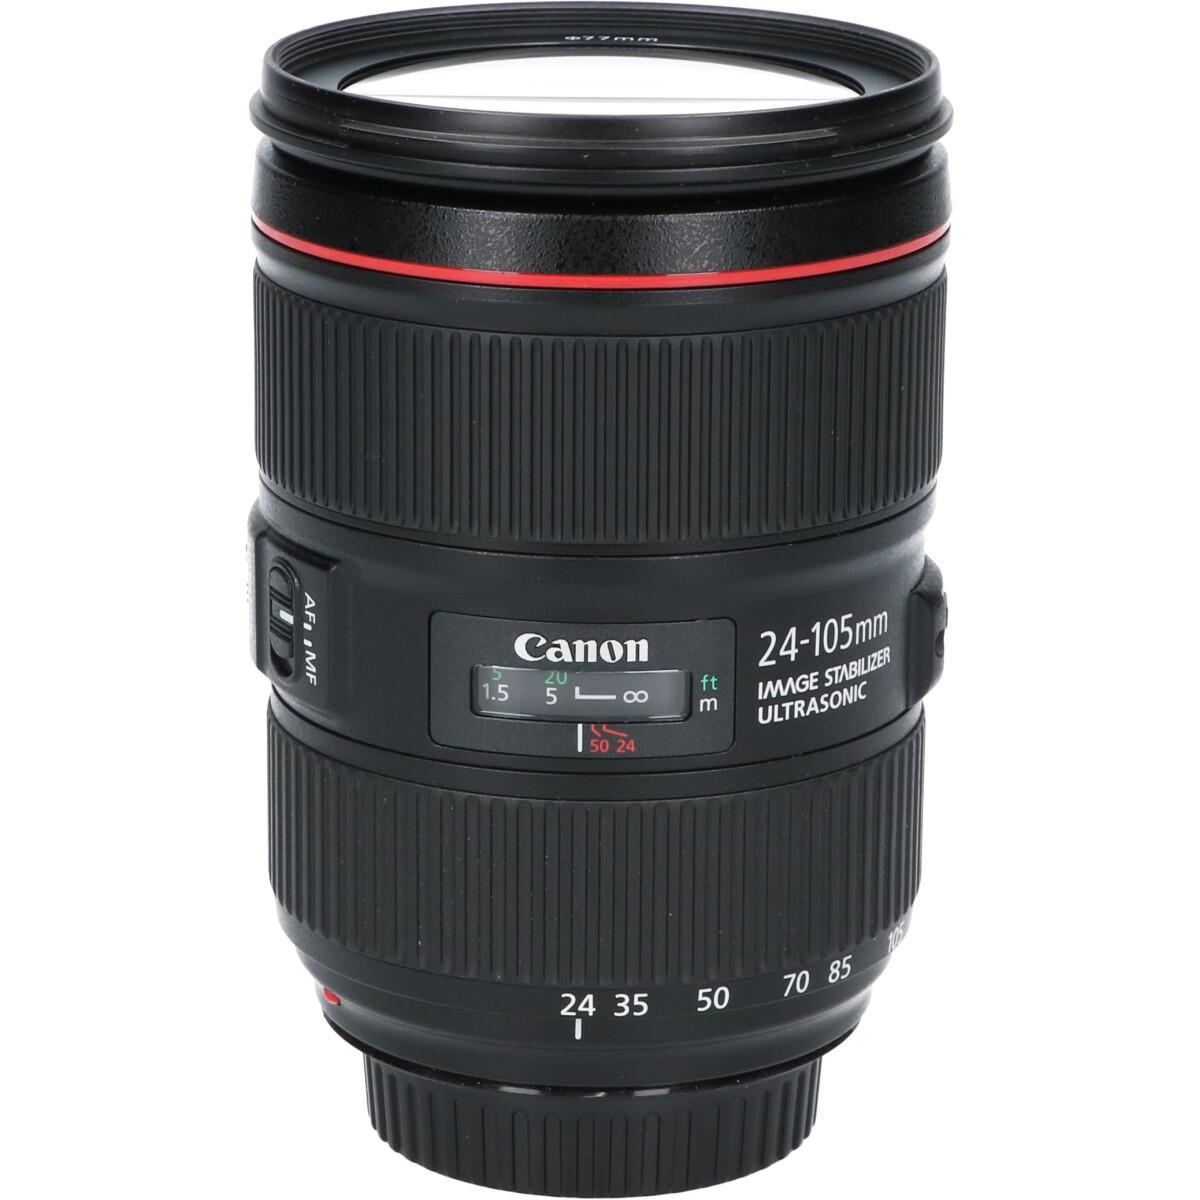 キヤノン 《並品》Canon EF24-105mm F4L IS II USM - spaturbo.com.br